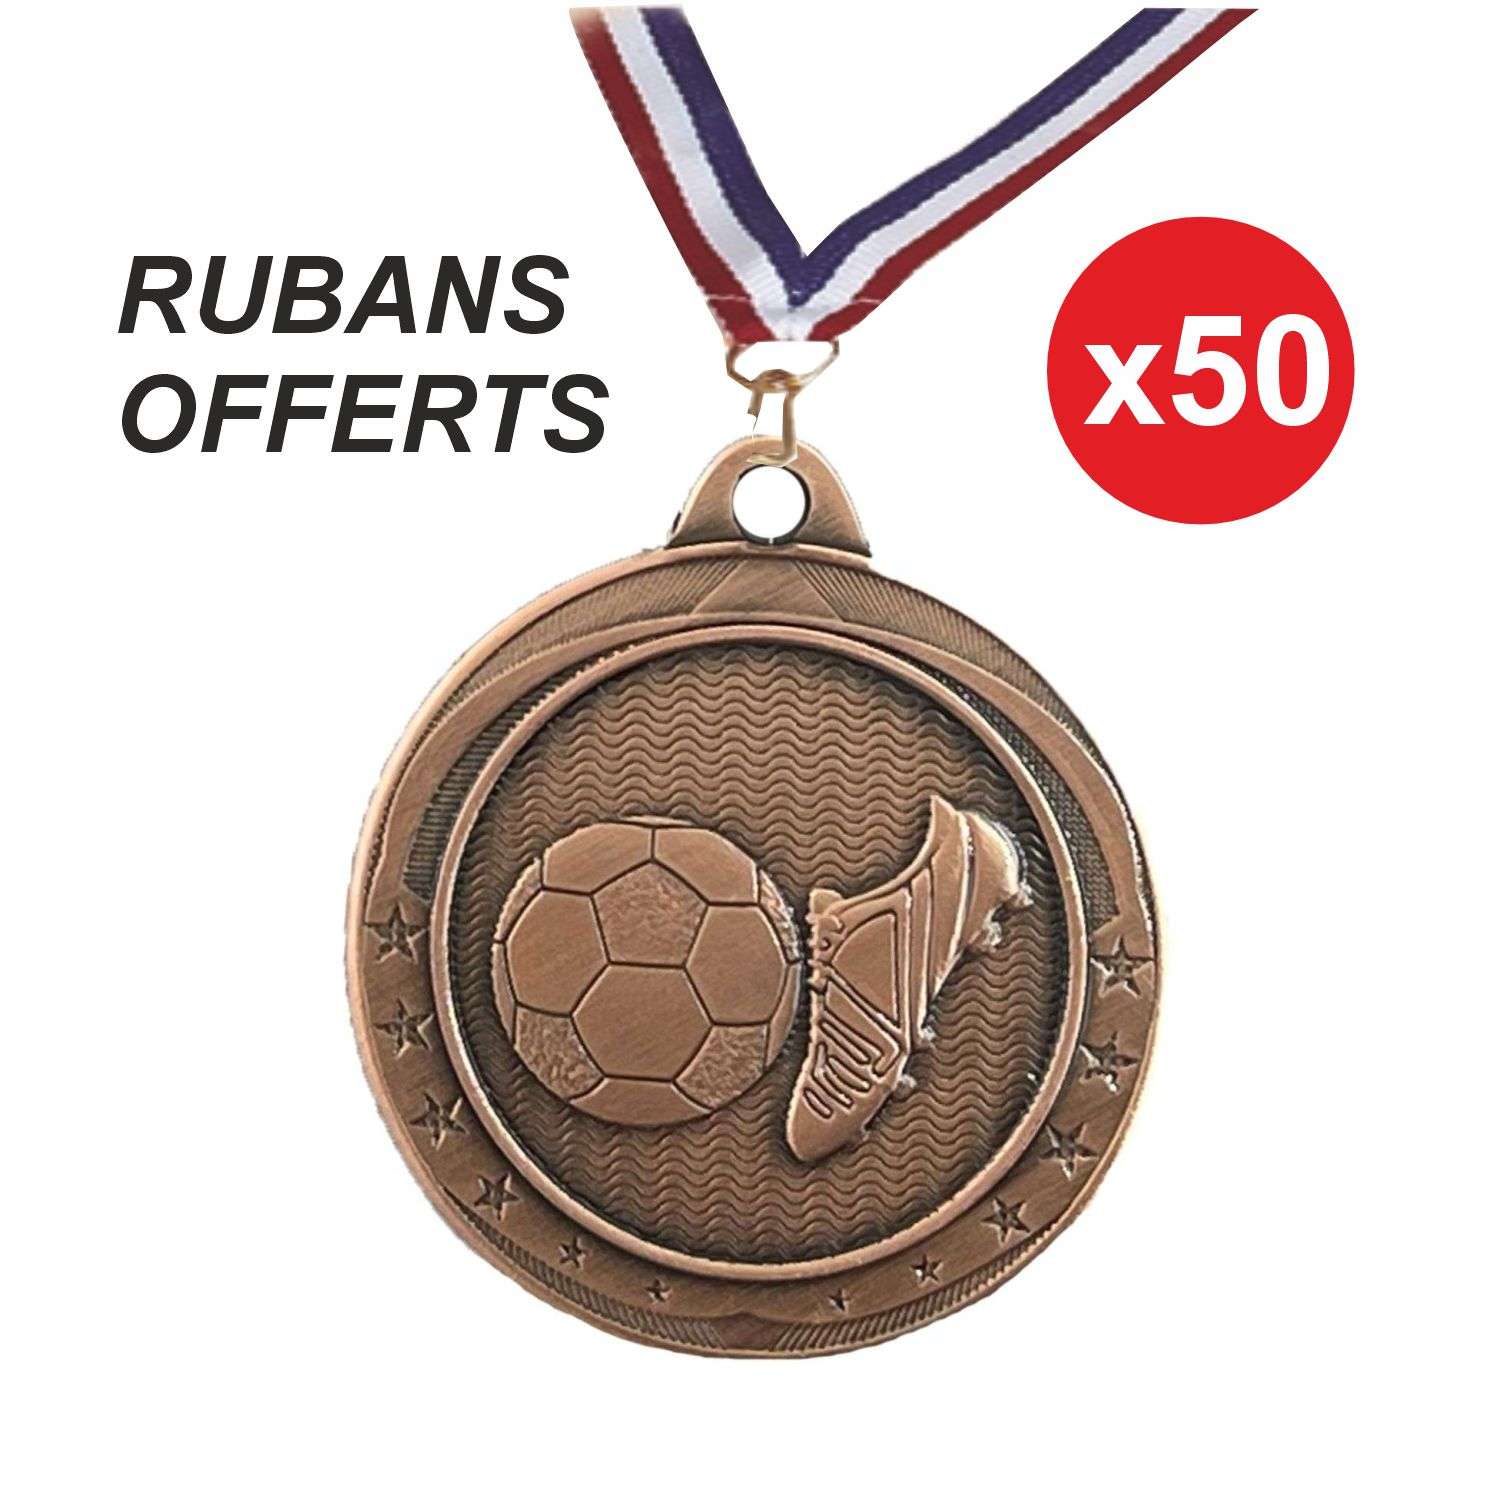 CH-IM00655.03 x50 - Bronze + Ruban offert